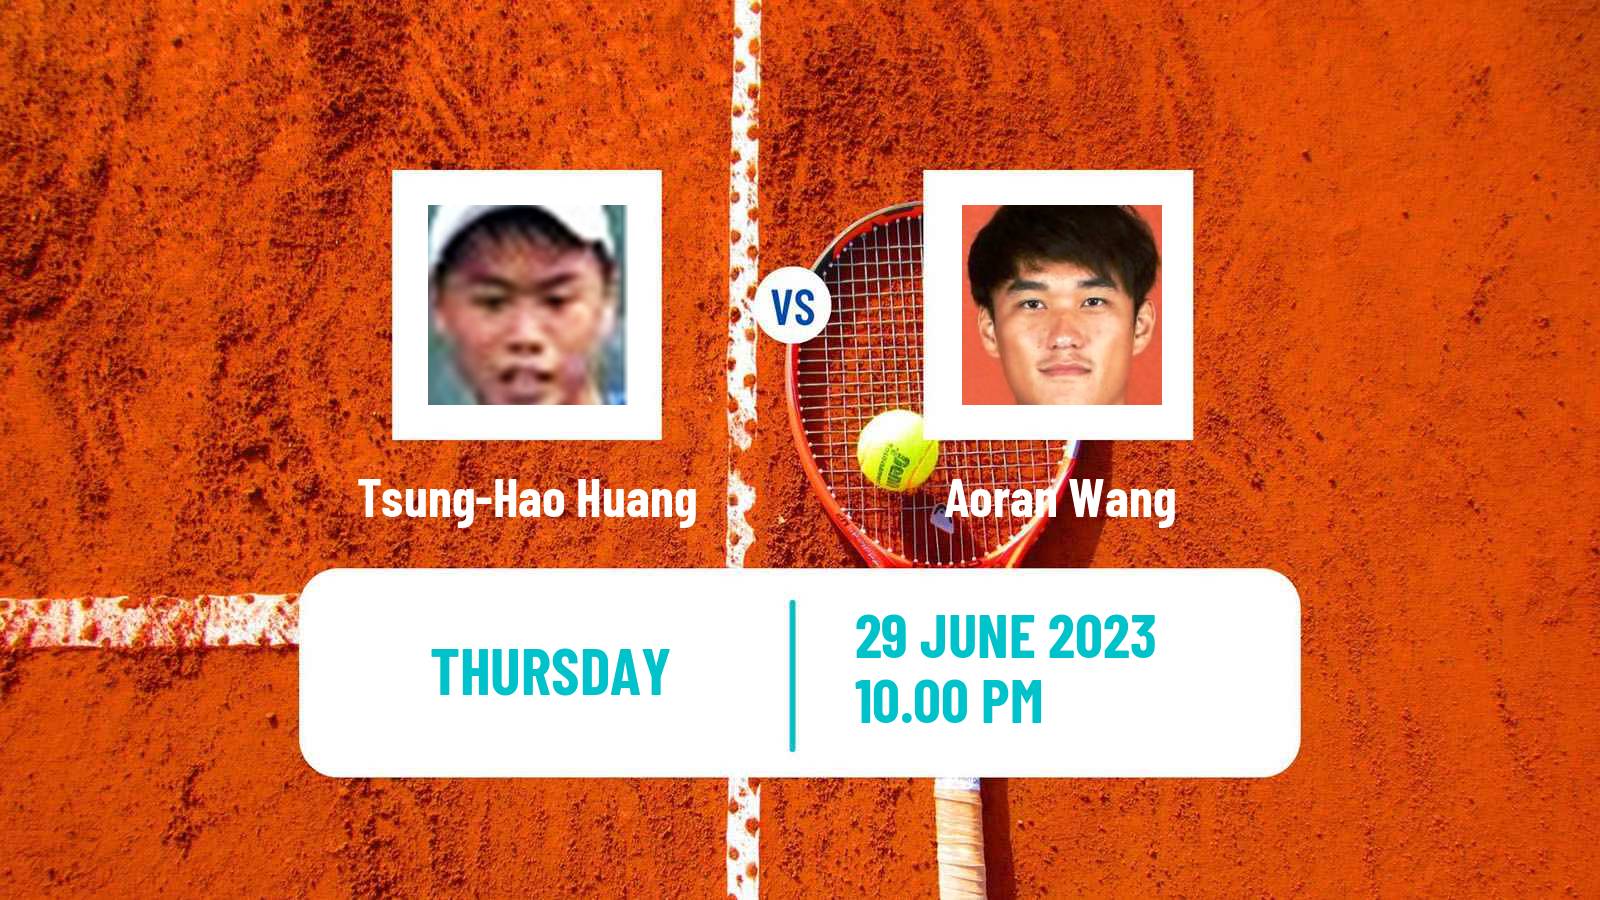 Tennis ITF M15 Tianjin 3 Men Tsung-Hao Huang - Aoran Wang